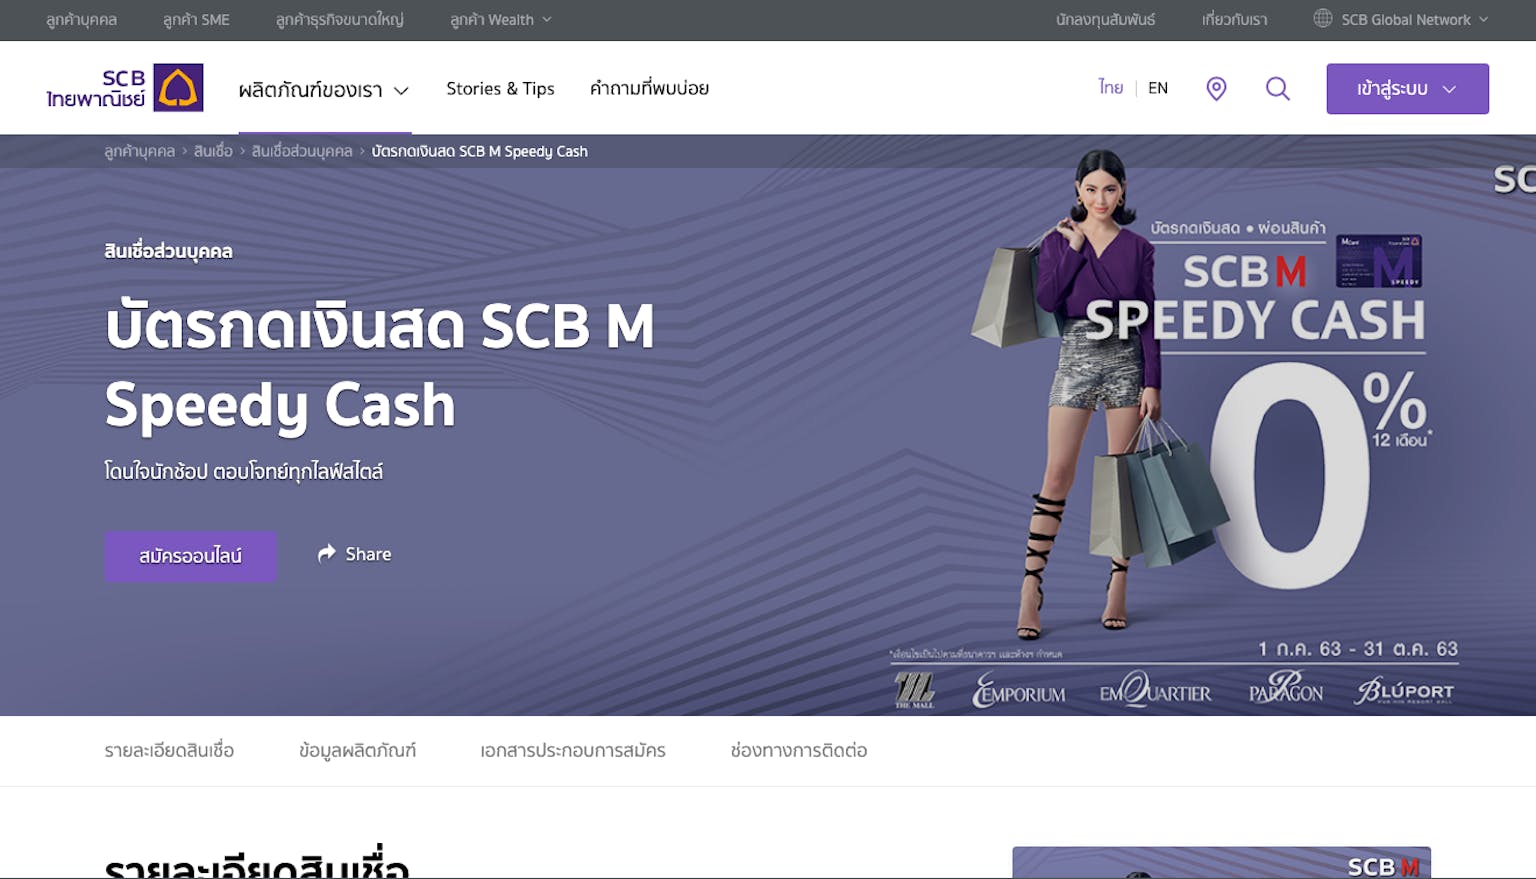 บัตรกดเงินสด Scb M Speedy Cash | ธนาคารไทยพาณิชย์ | Moneyduck Thailand